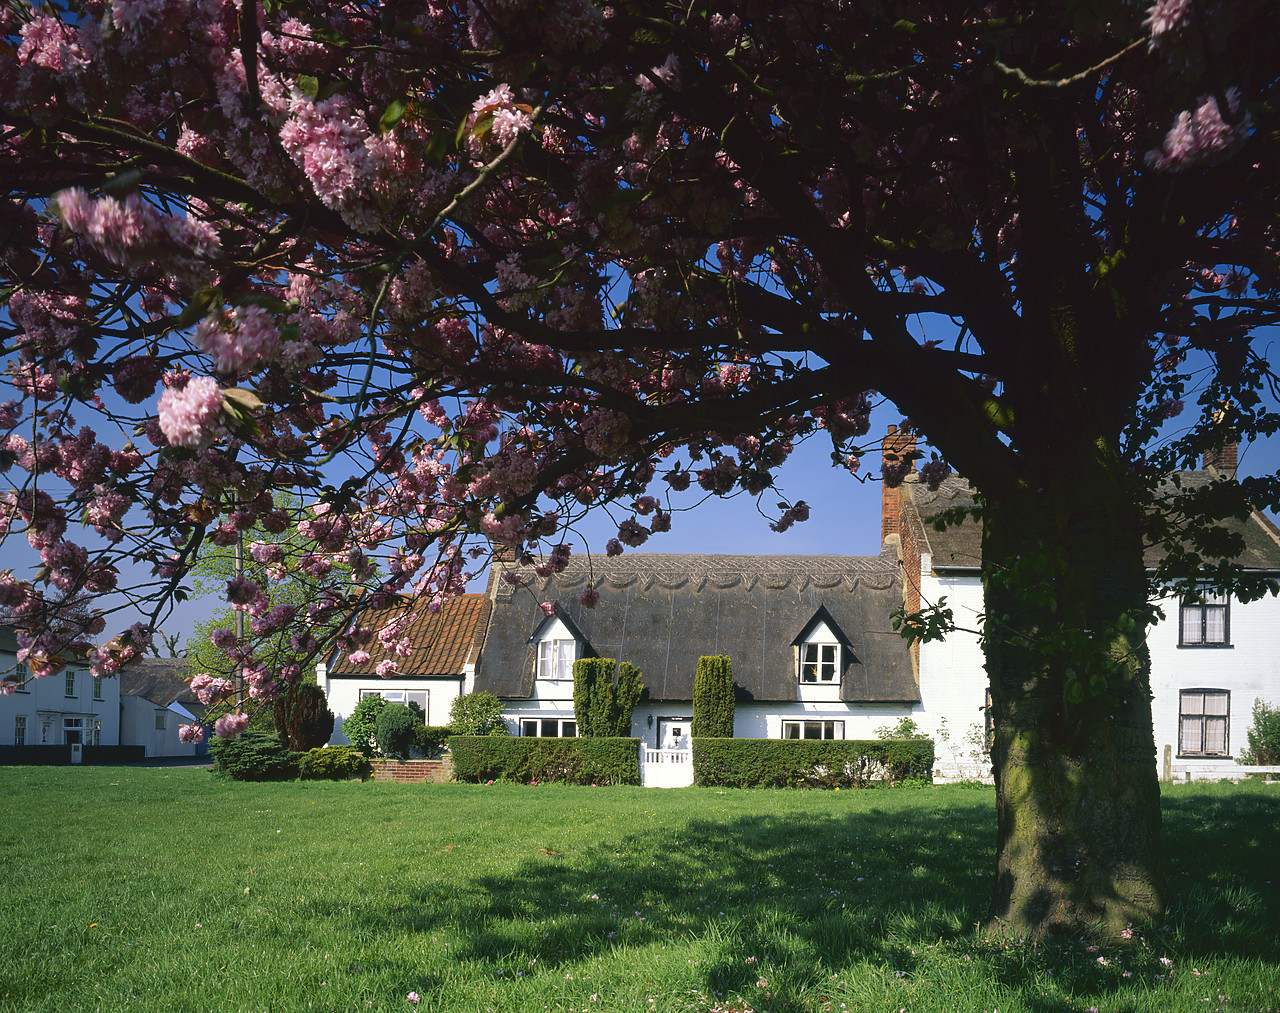 #980641-1 - Thatch Cottage in Spring, Martham, Norfolk, England